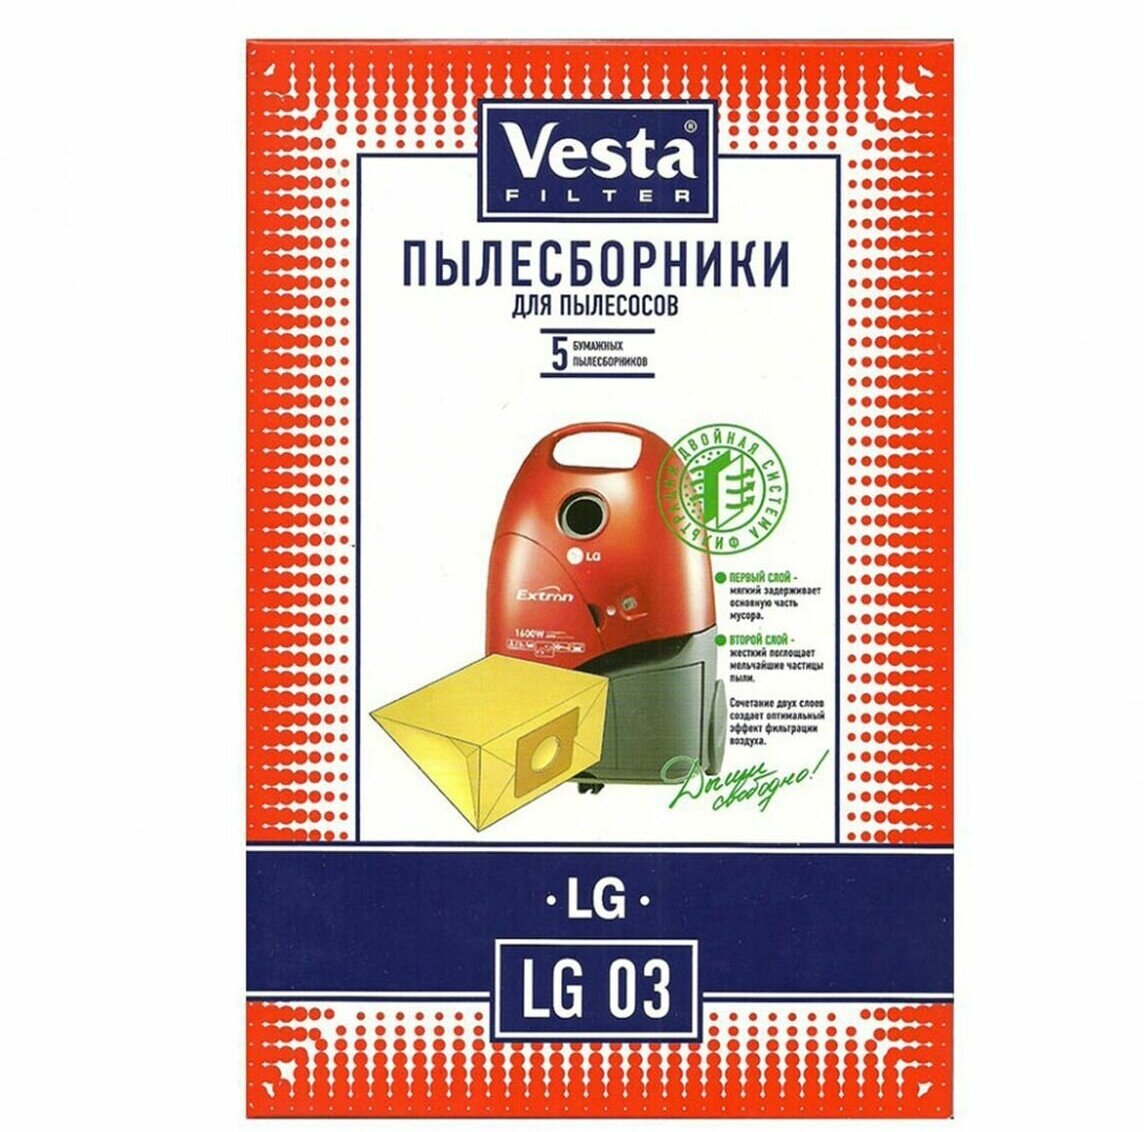 Vesta filter Бумажные пылесборники LG 03, 5 шт. —  в интернет .